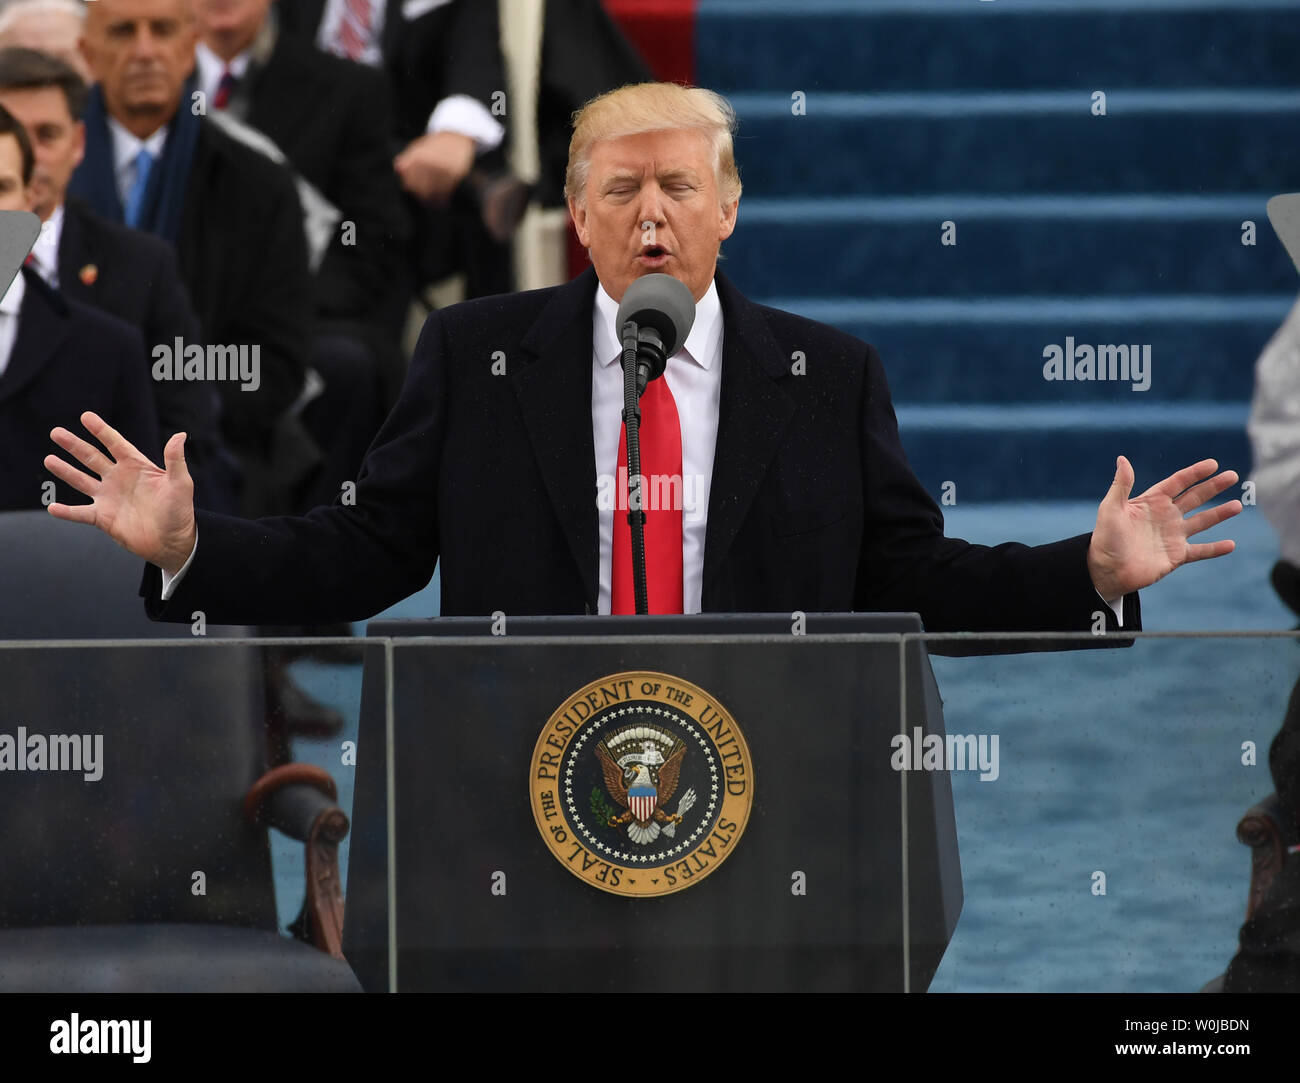 Presidente Donald Trump, pronuncia su discurso inaugural en la inauguración el 20 de enero de 2017 en Washington, D.C. el triunfo se convirtió en el 45º Presidente de los Estados Unidos. Foto por Pat Benic/UPI Foto de stock